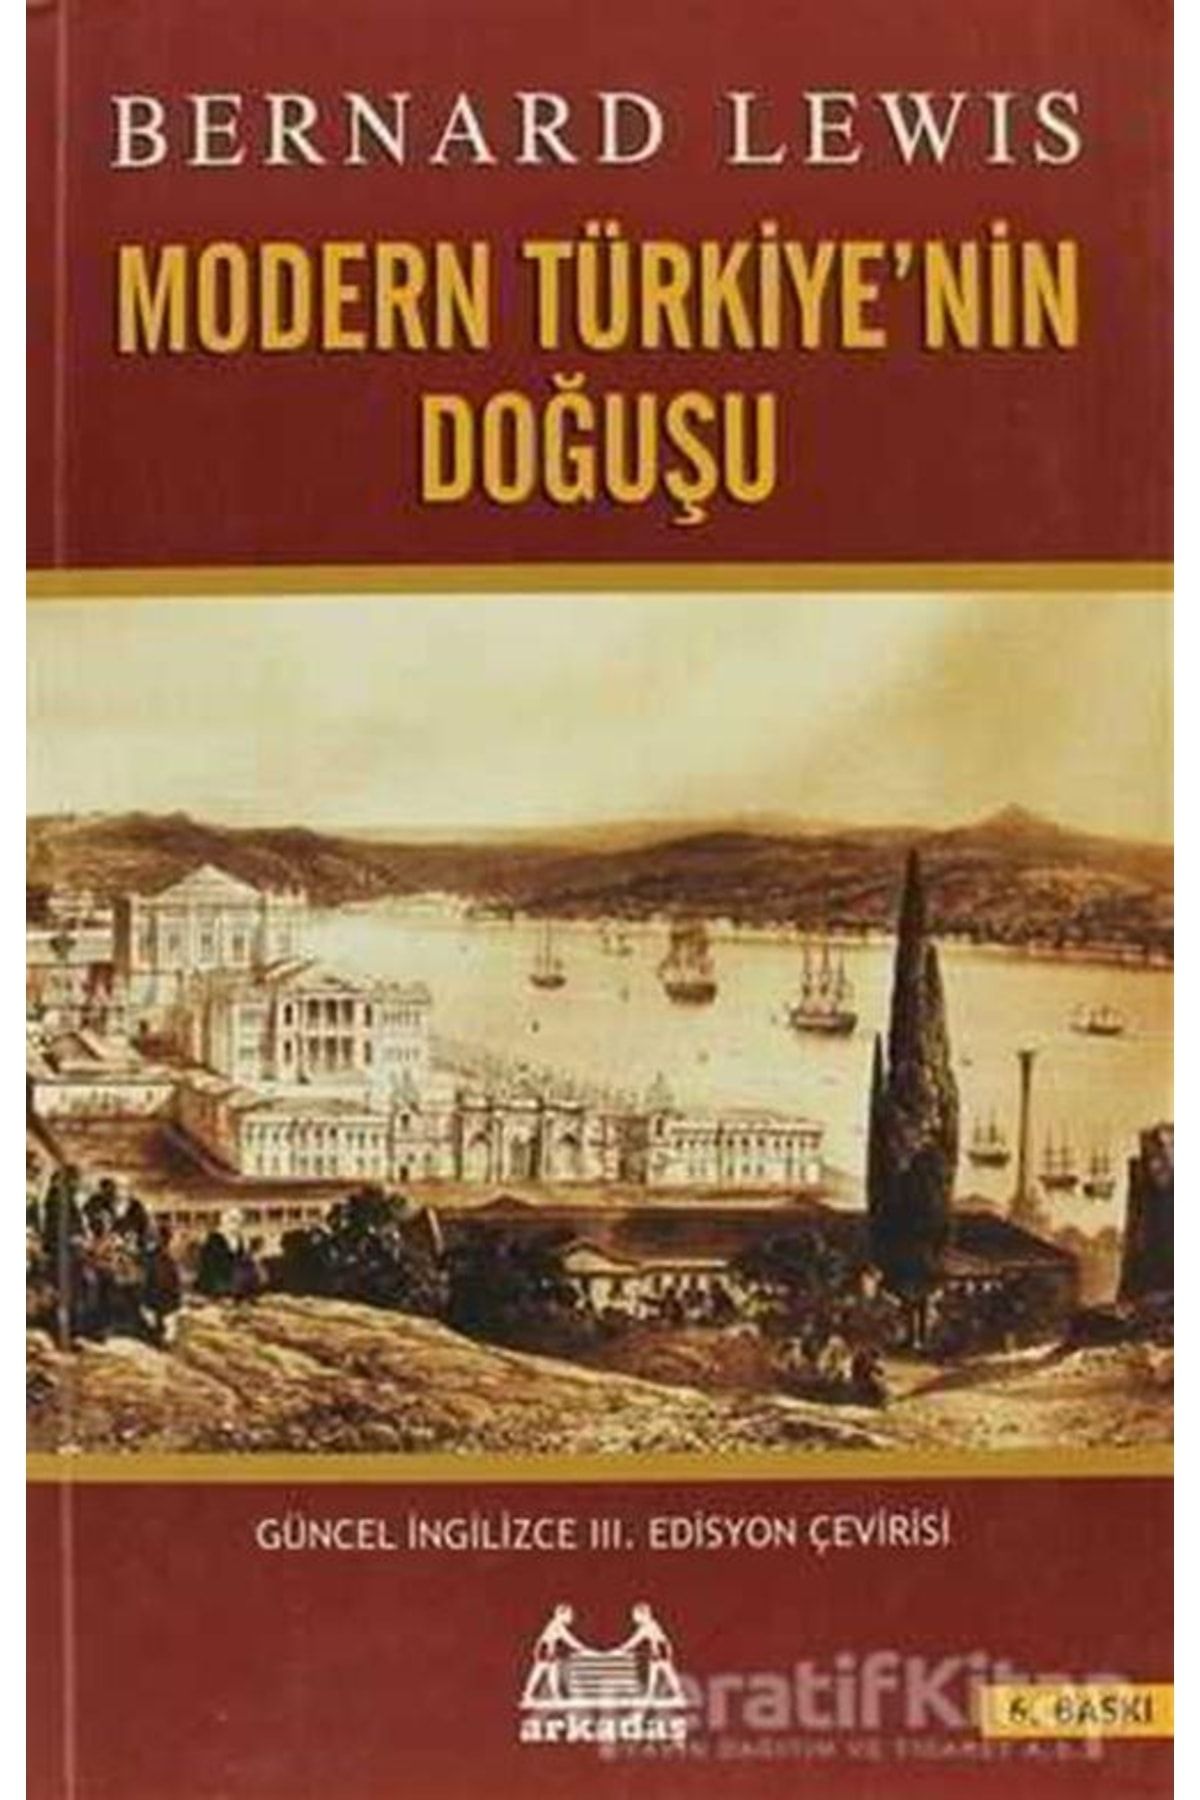 Arkadaş Yayıncılık Modern Türkiye’nin Doğuşu - Bernard Lewis -